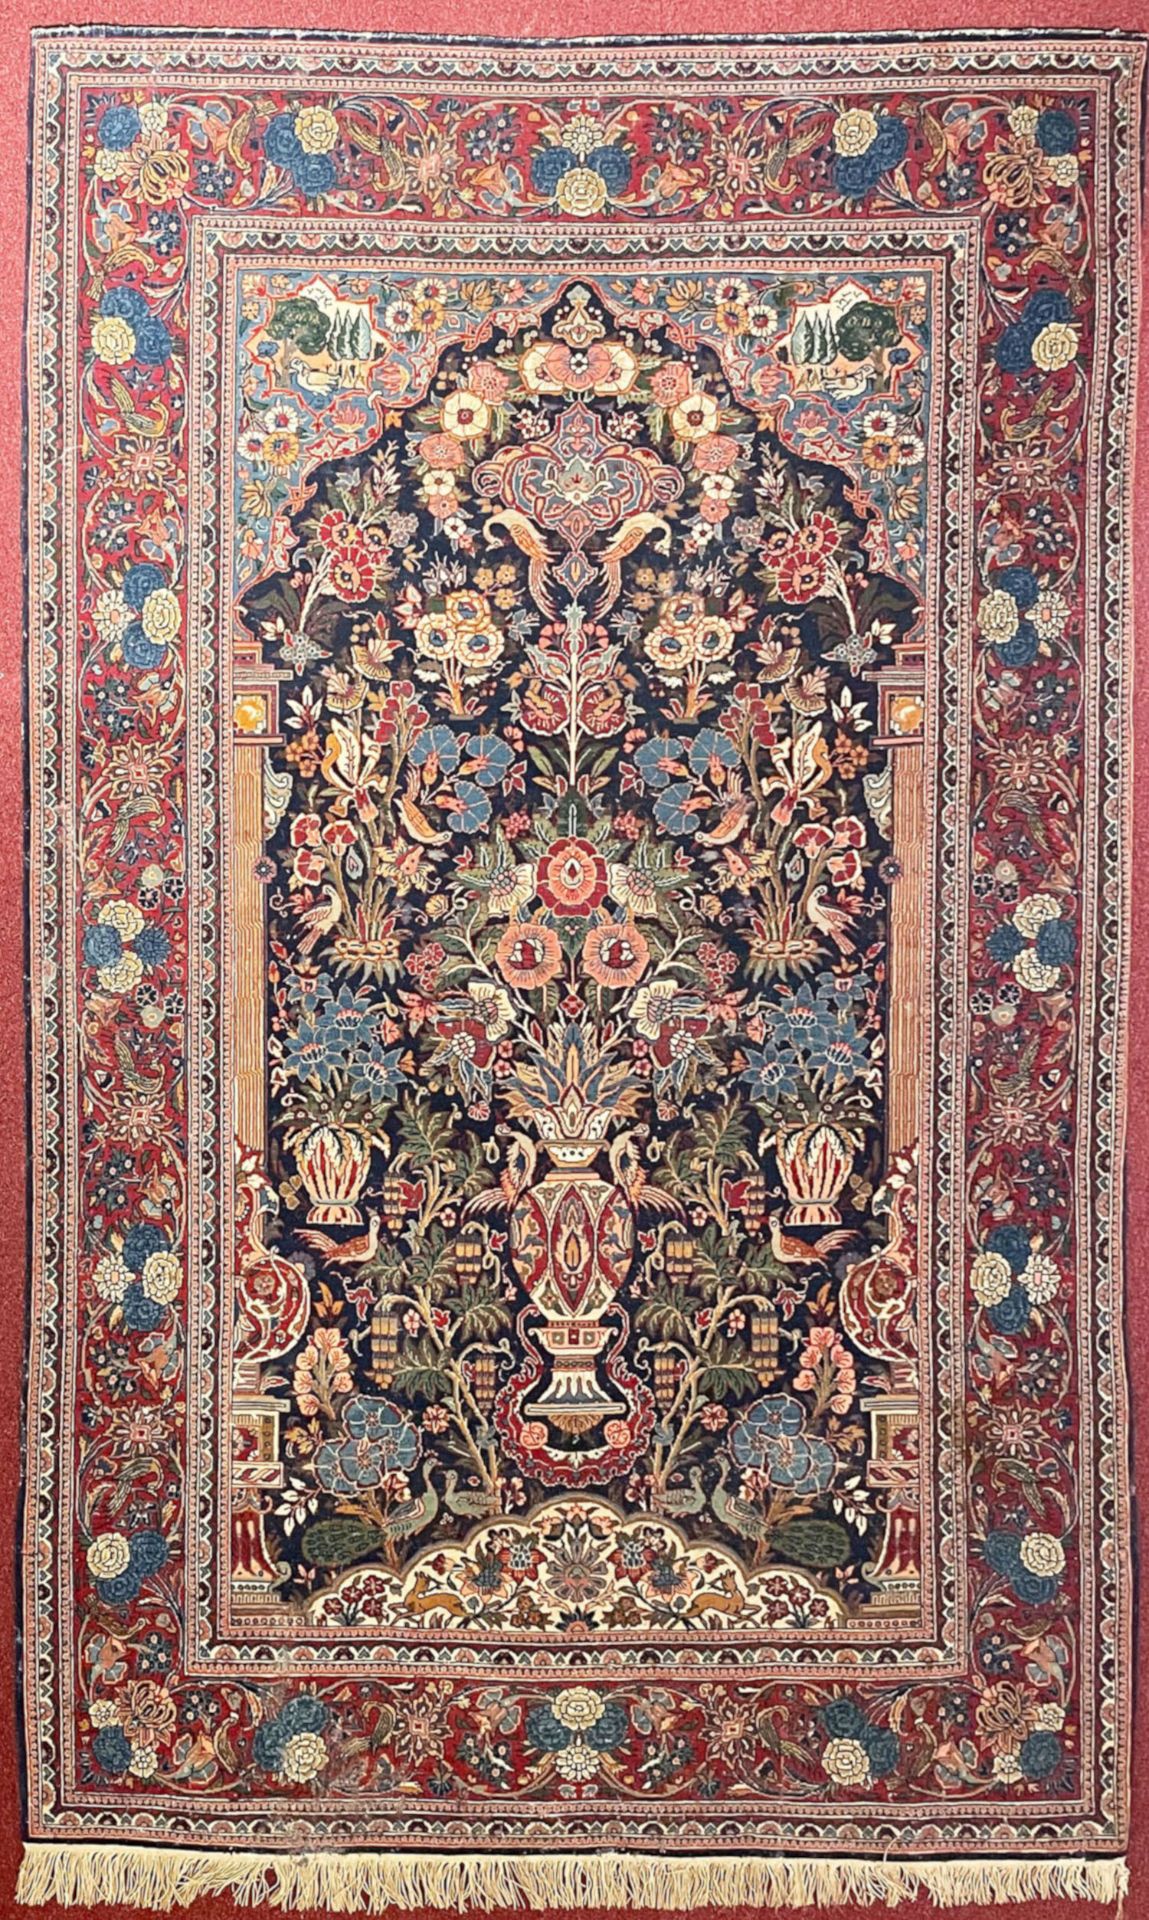 Orientteppich, Wandteppich, Vase mit floralem Muster, rot und blau, Altersspuren, einseitig